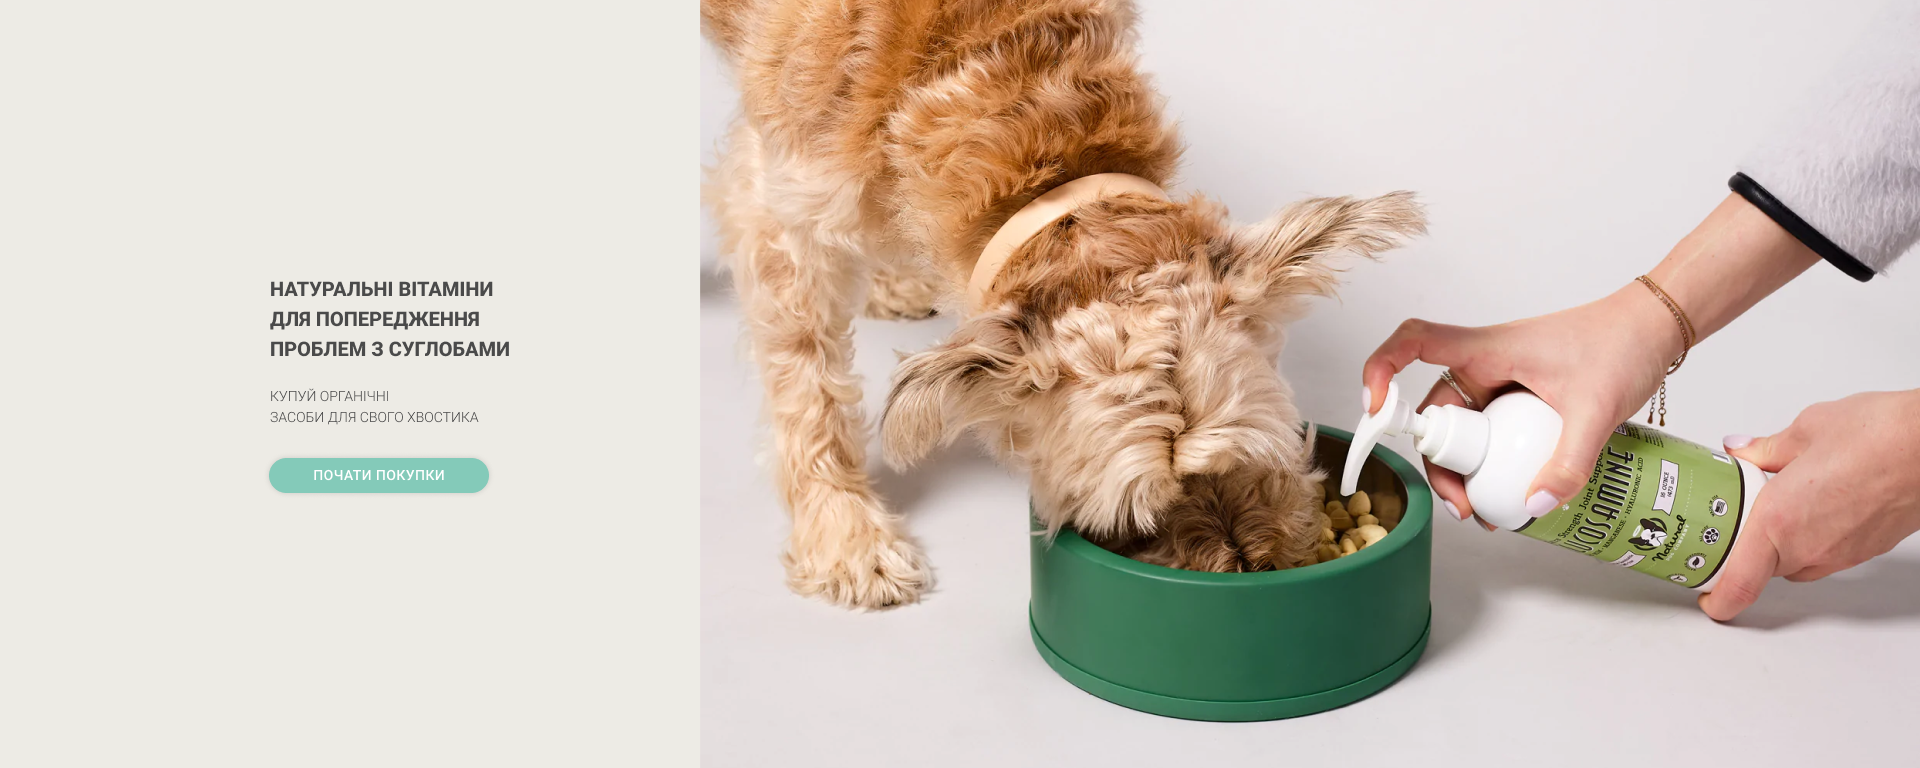 Витаминные добавки для собак для здоровых суставов и костей